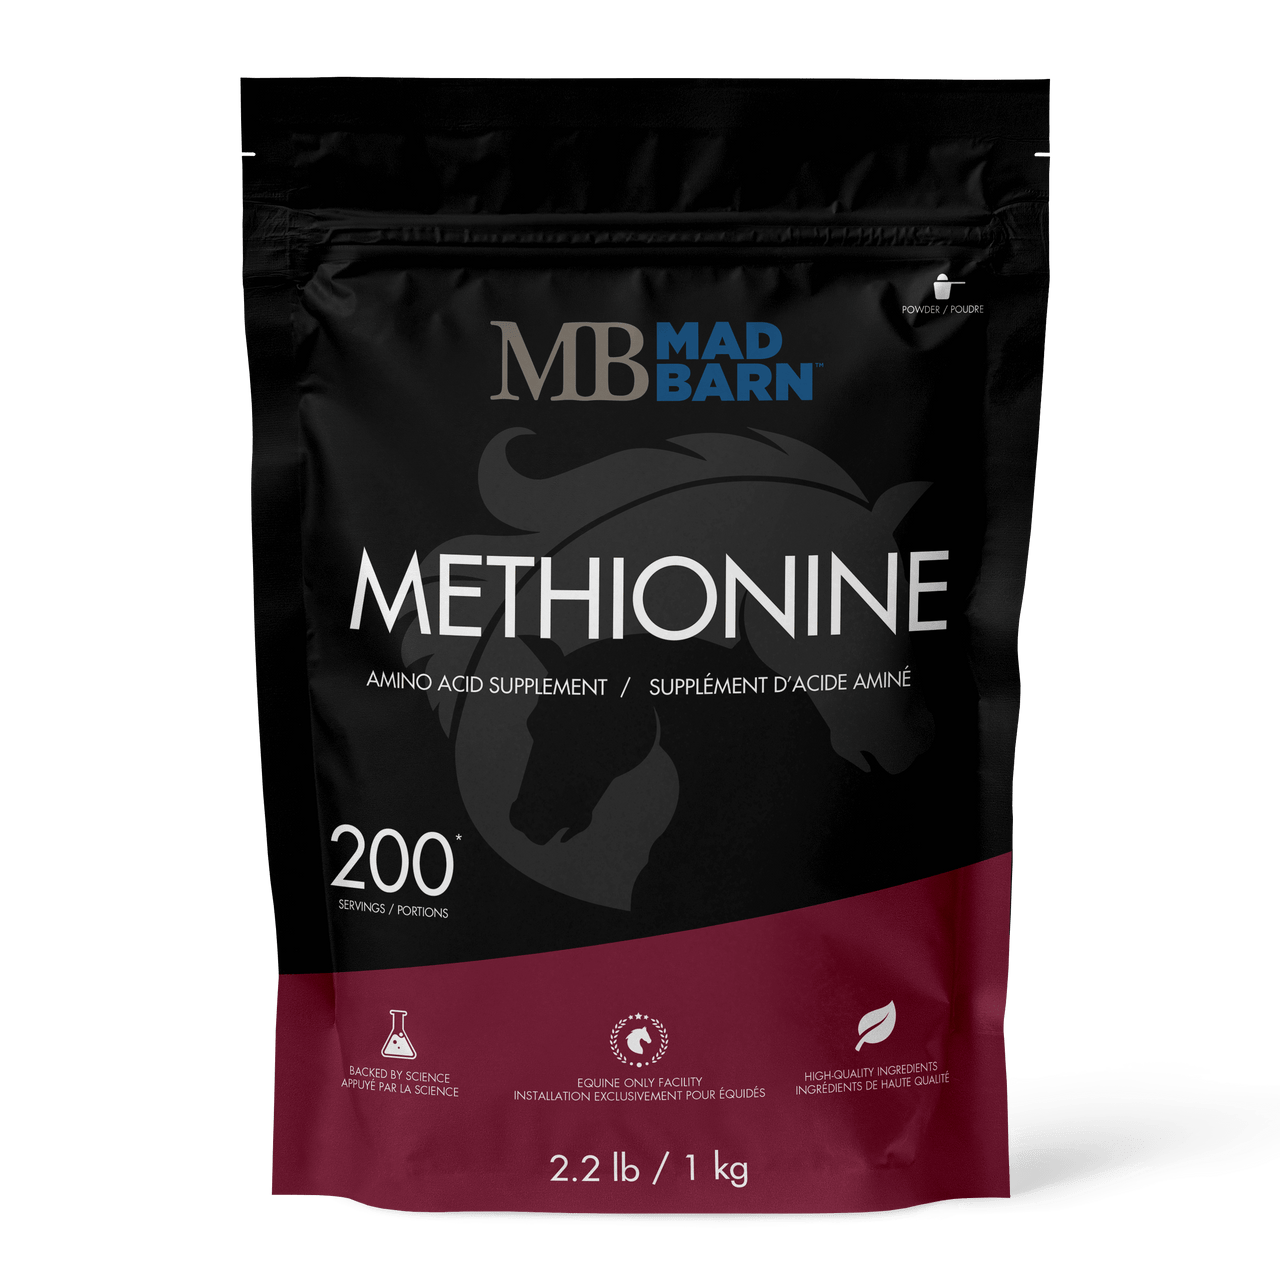 Mad Barn Methionine